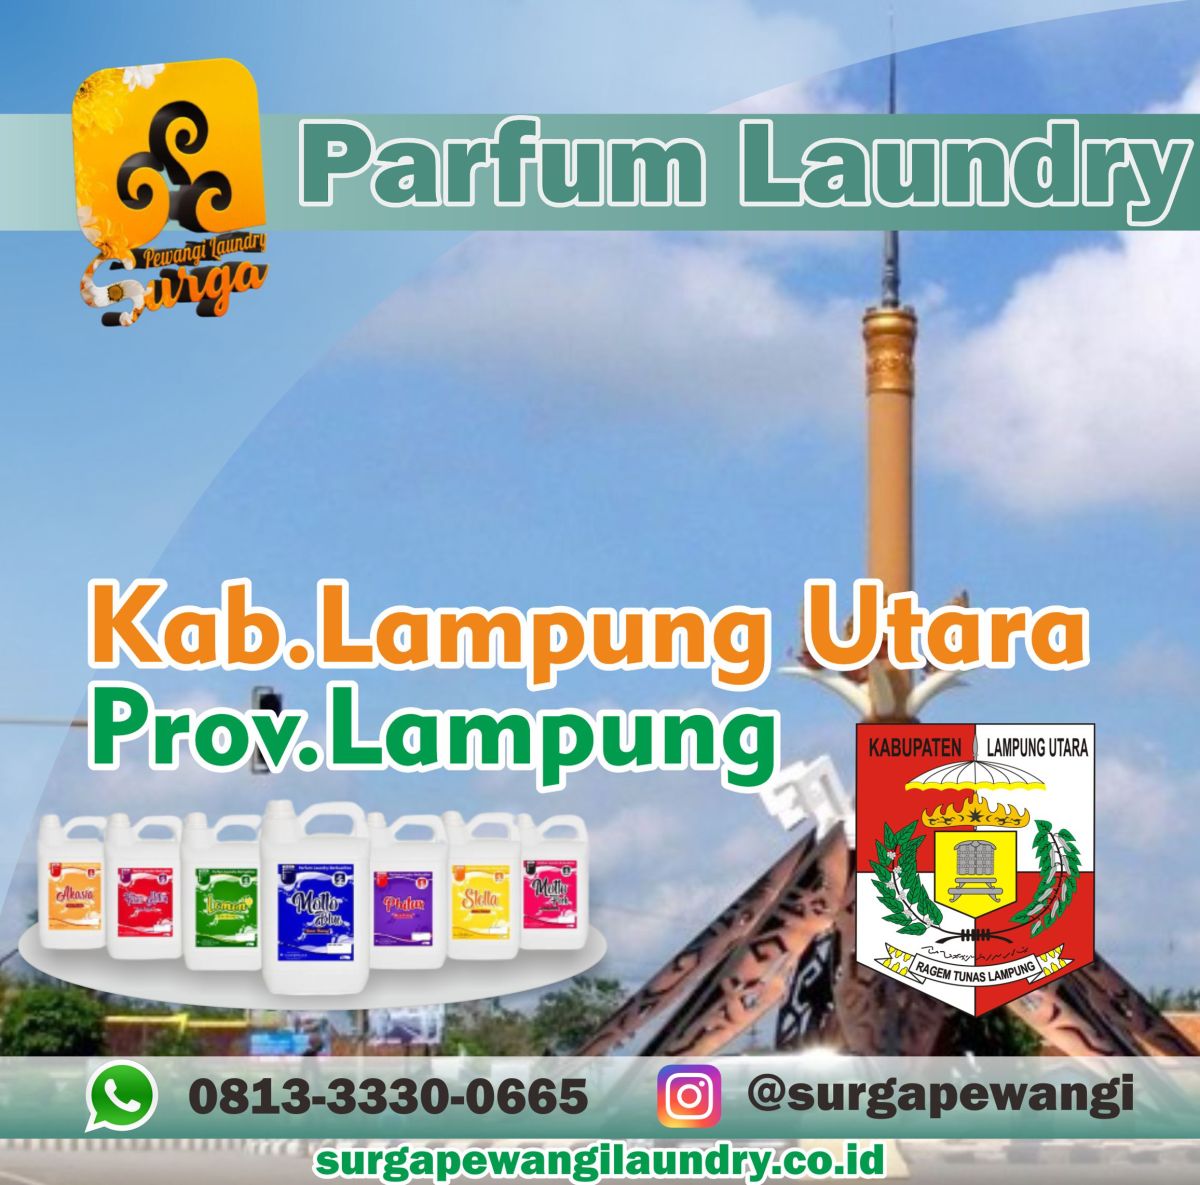 Parfum Laundry Kabupaten Lampung Utara, Prov Lampung